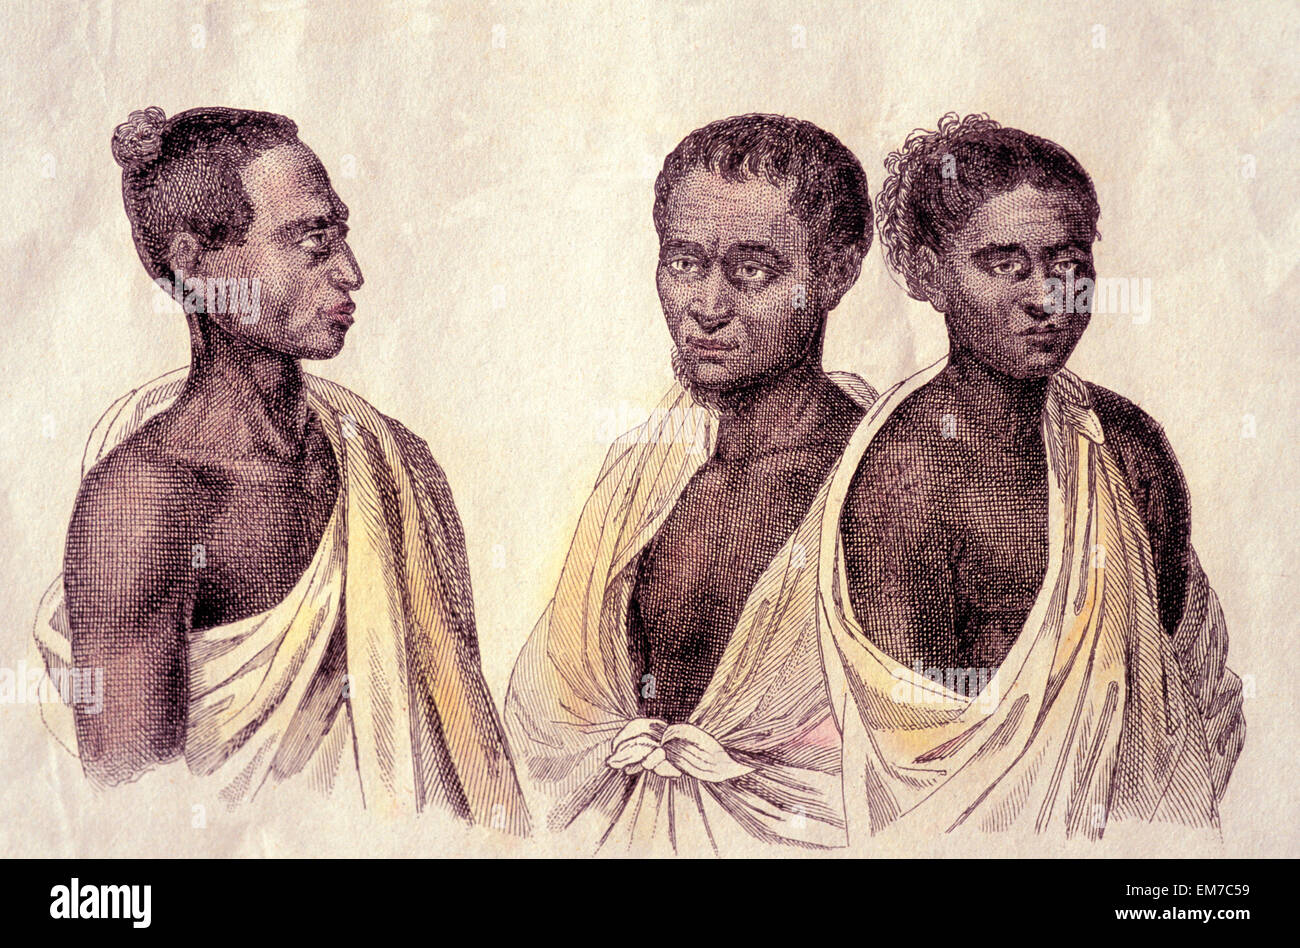 C.1816, Illustration Of Three Hawaiian Men. Artist, Louis Choris. Stock Photo